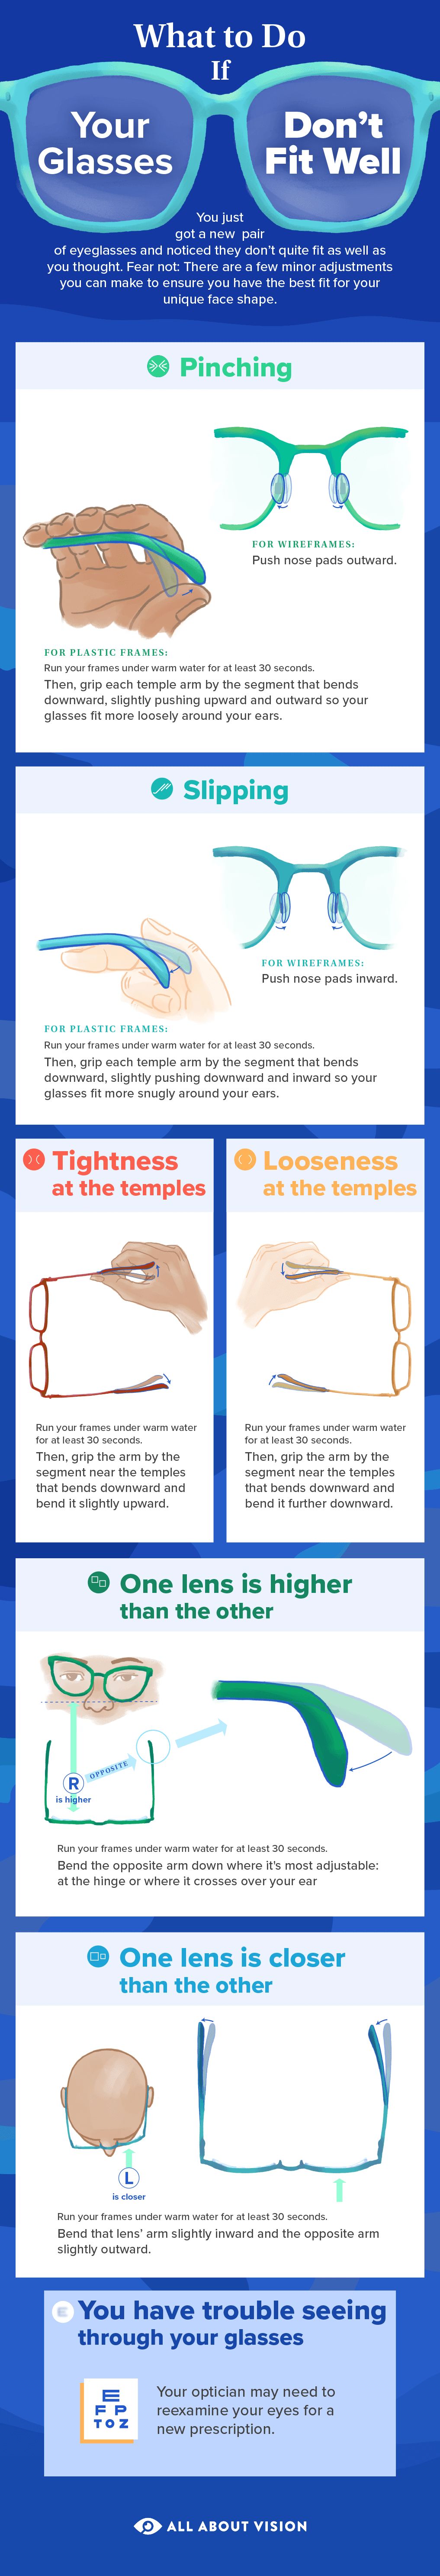 ting døråbning ødemark How To Adjust and Tighten Your Glasses at Home